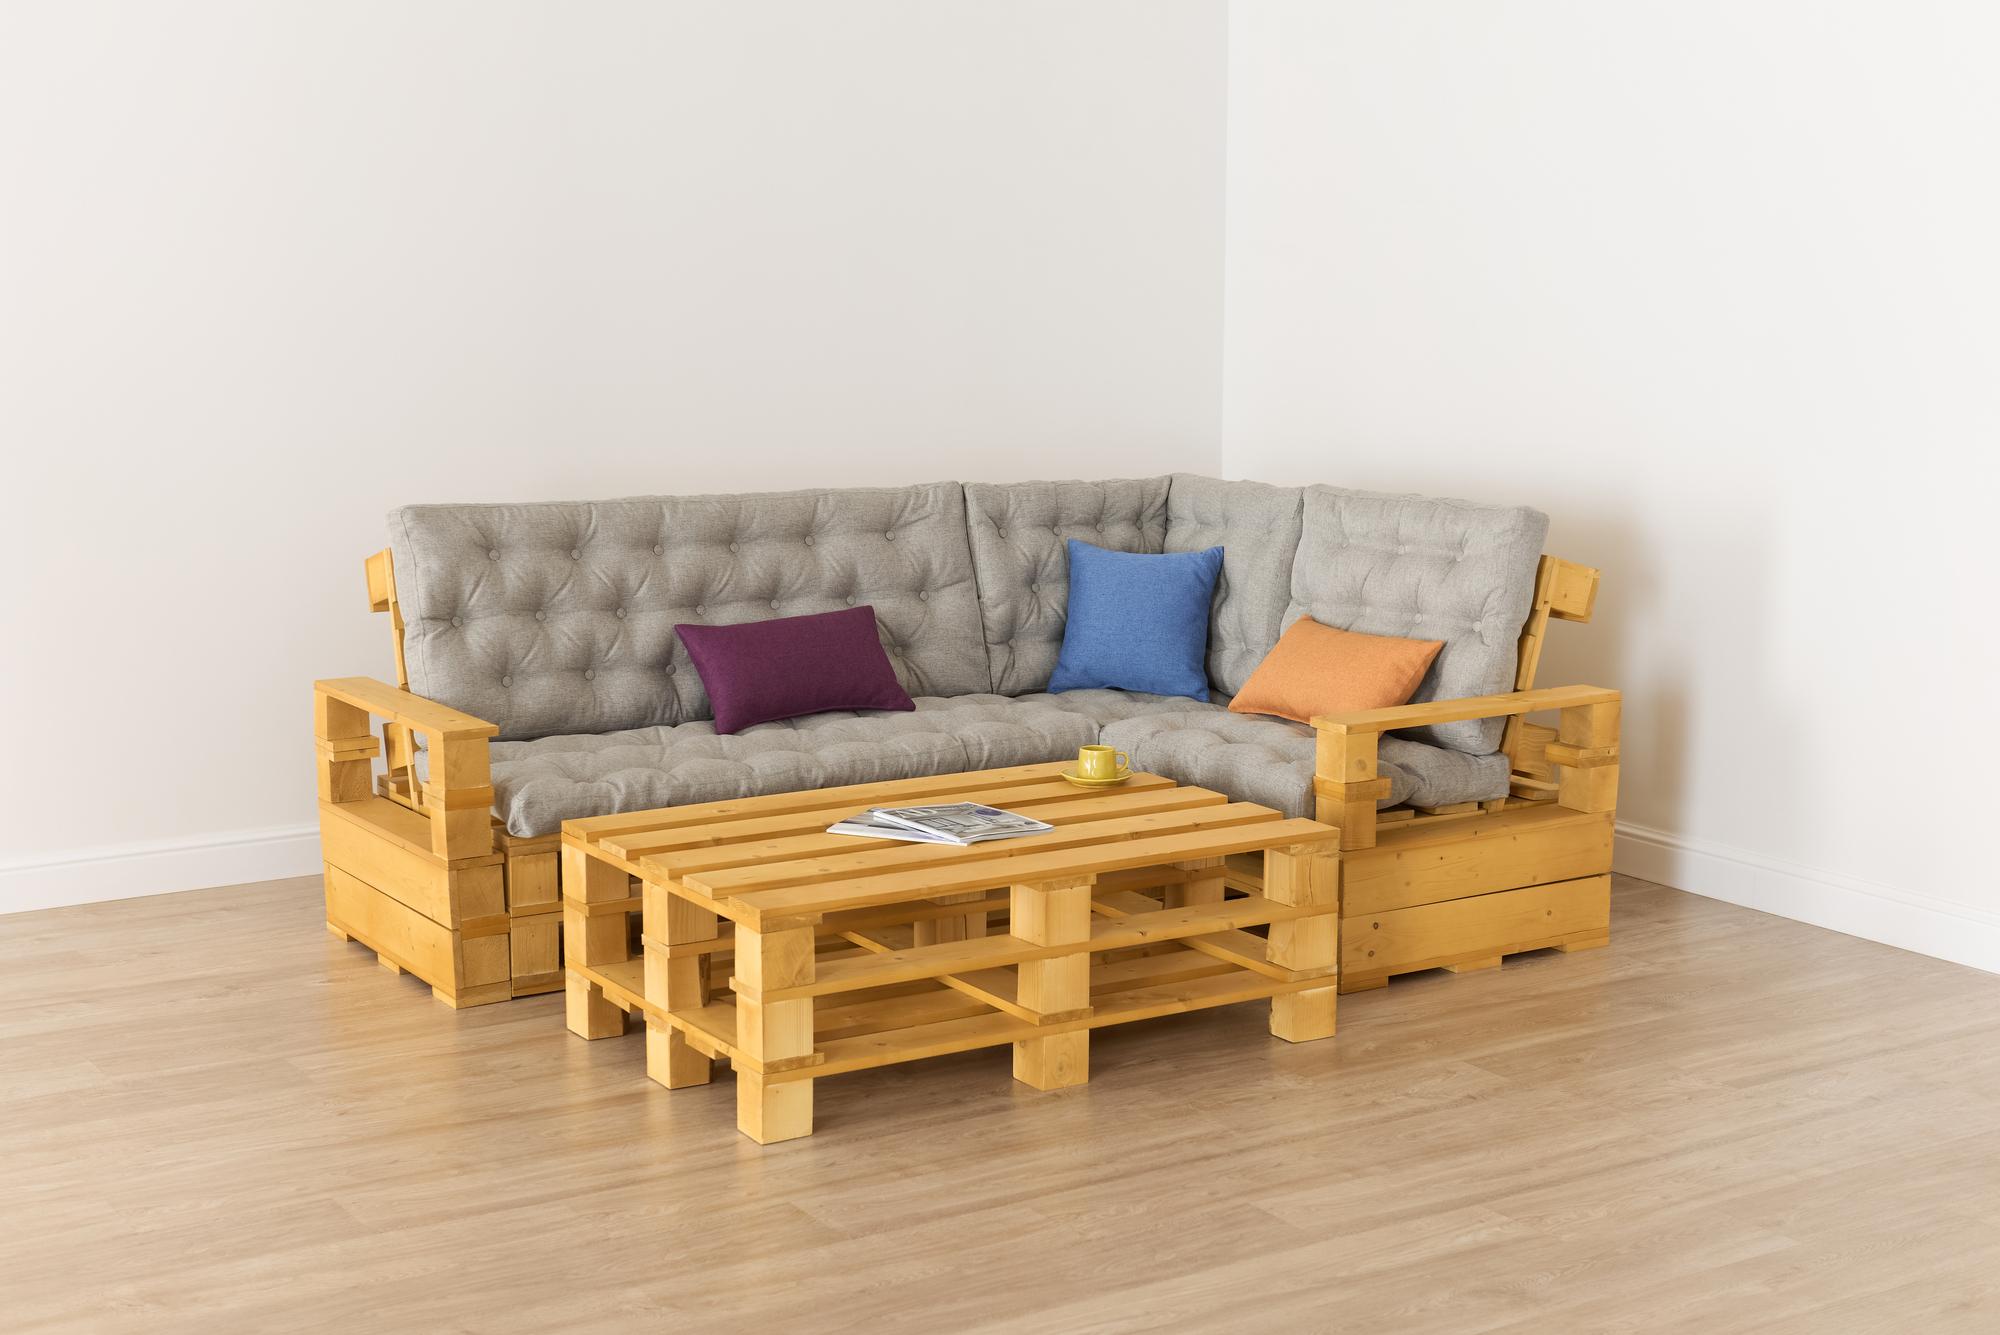 Купить Подлокотник + Диван 70 + угловой диван + диван 140 + подлокотник + стол большой от производителя “Архитектория” 